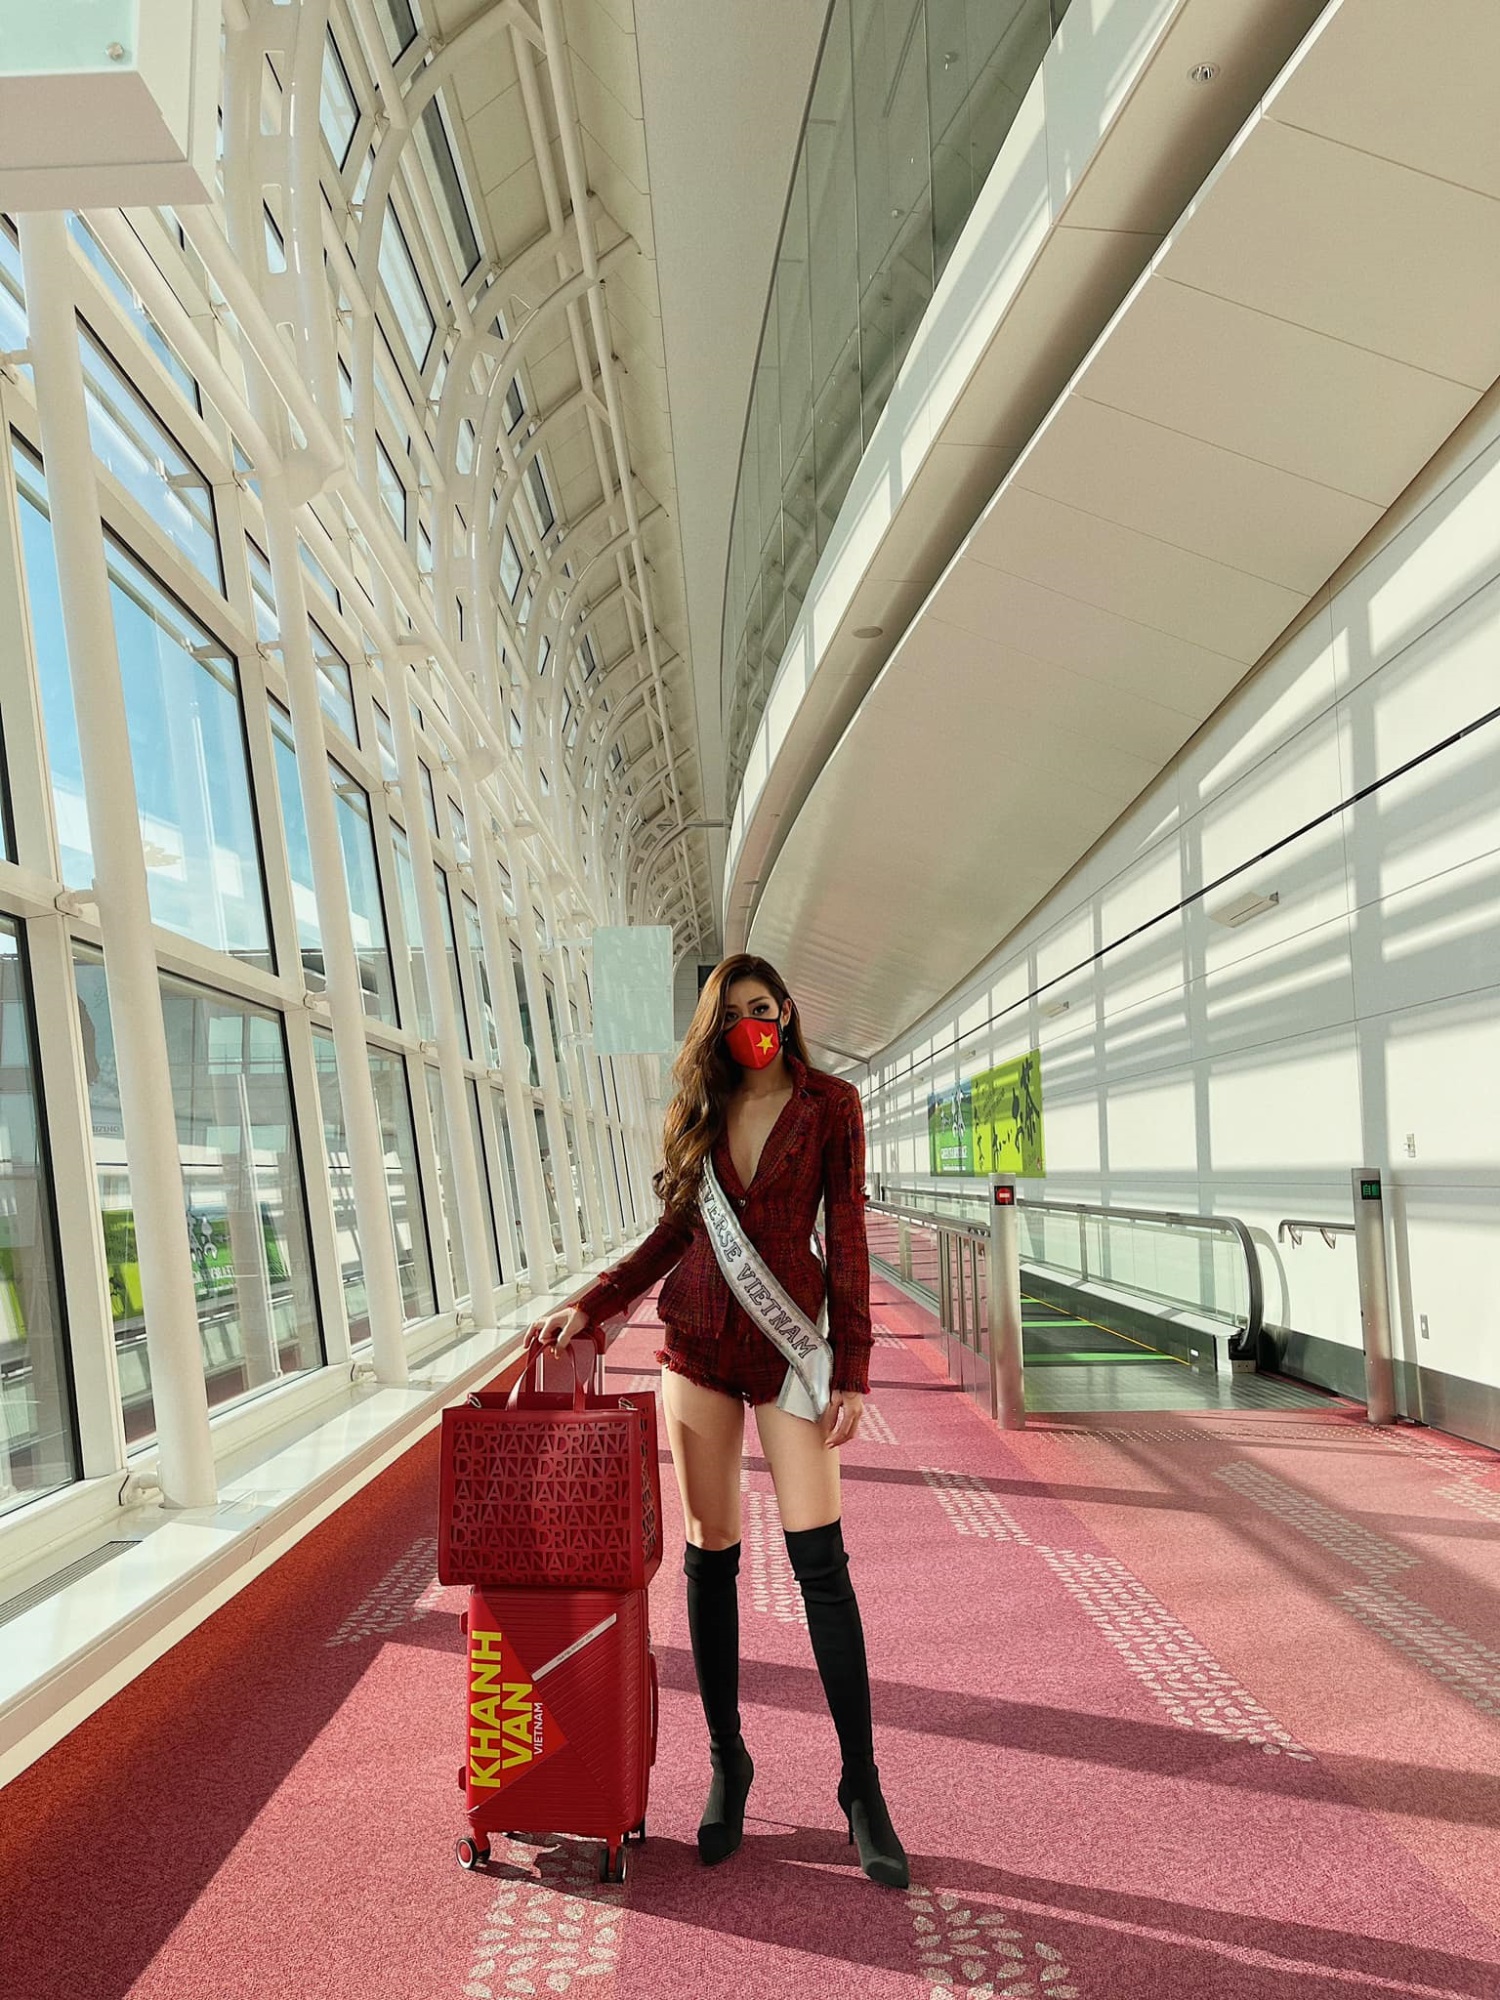 Hoa hậu Khánh Vân lên đường sang Mỹ thi Miss Universe, trang phục gây chú ý - Ảnh 3